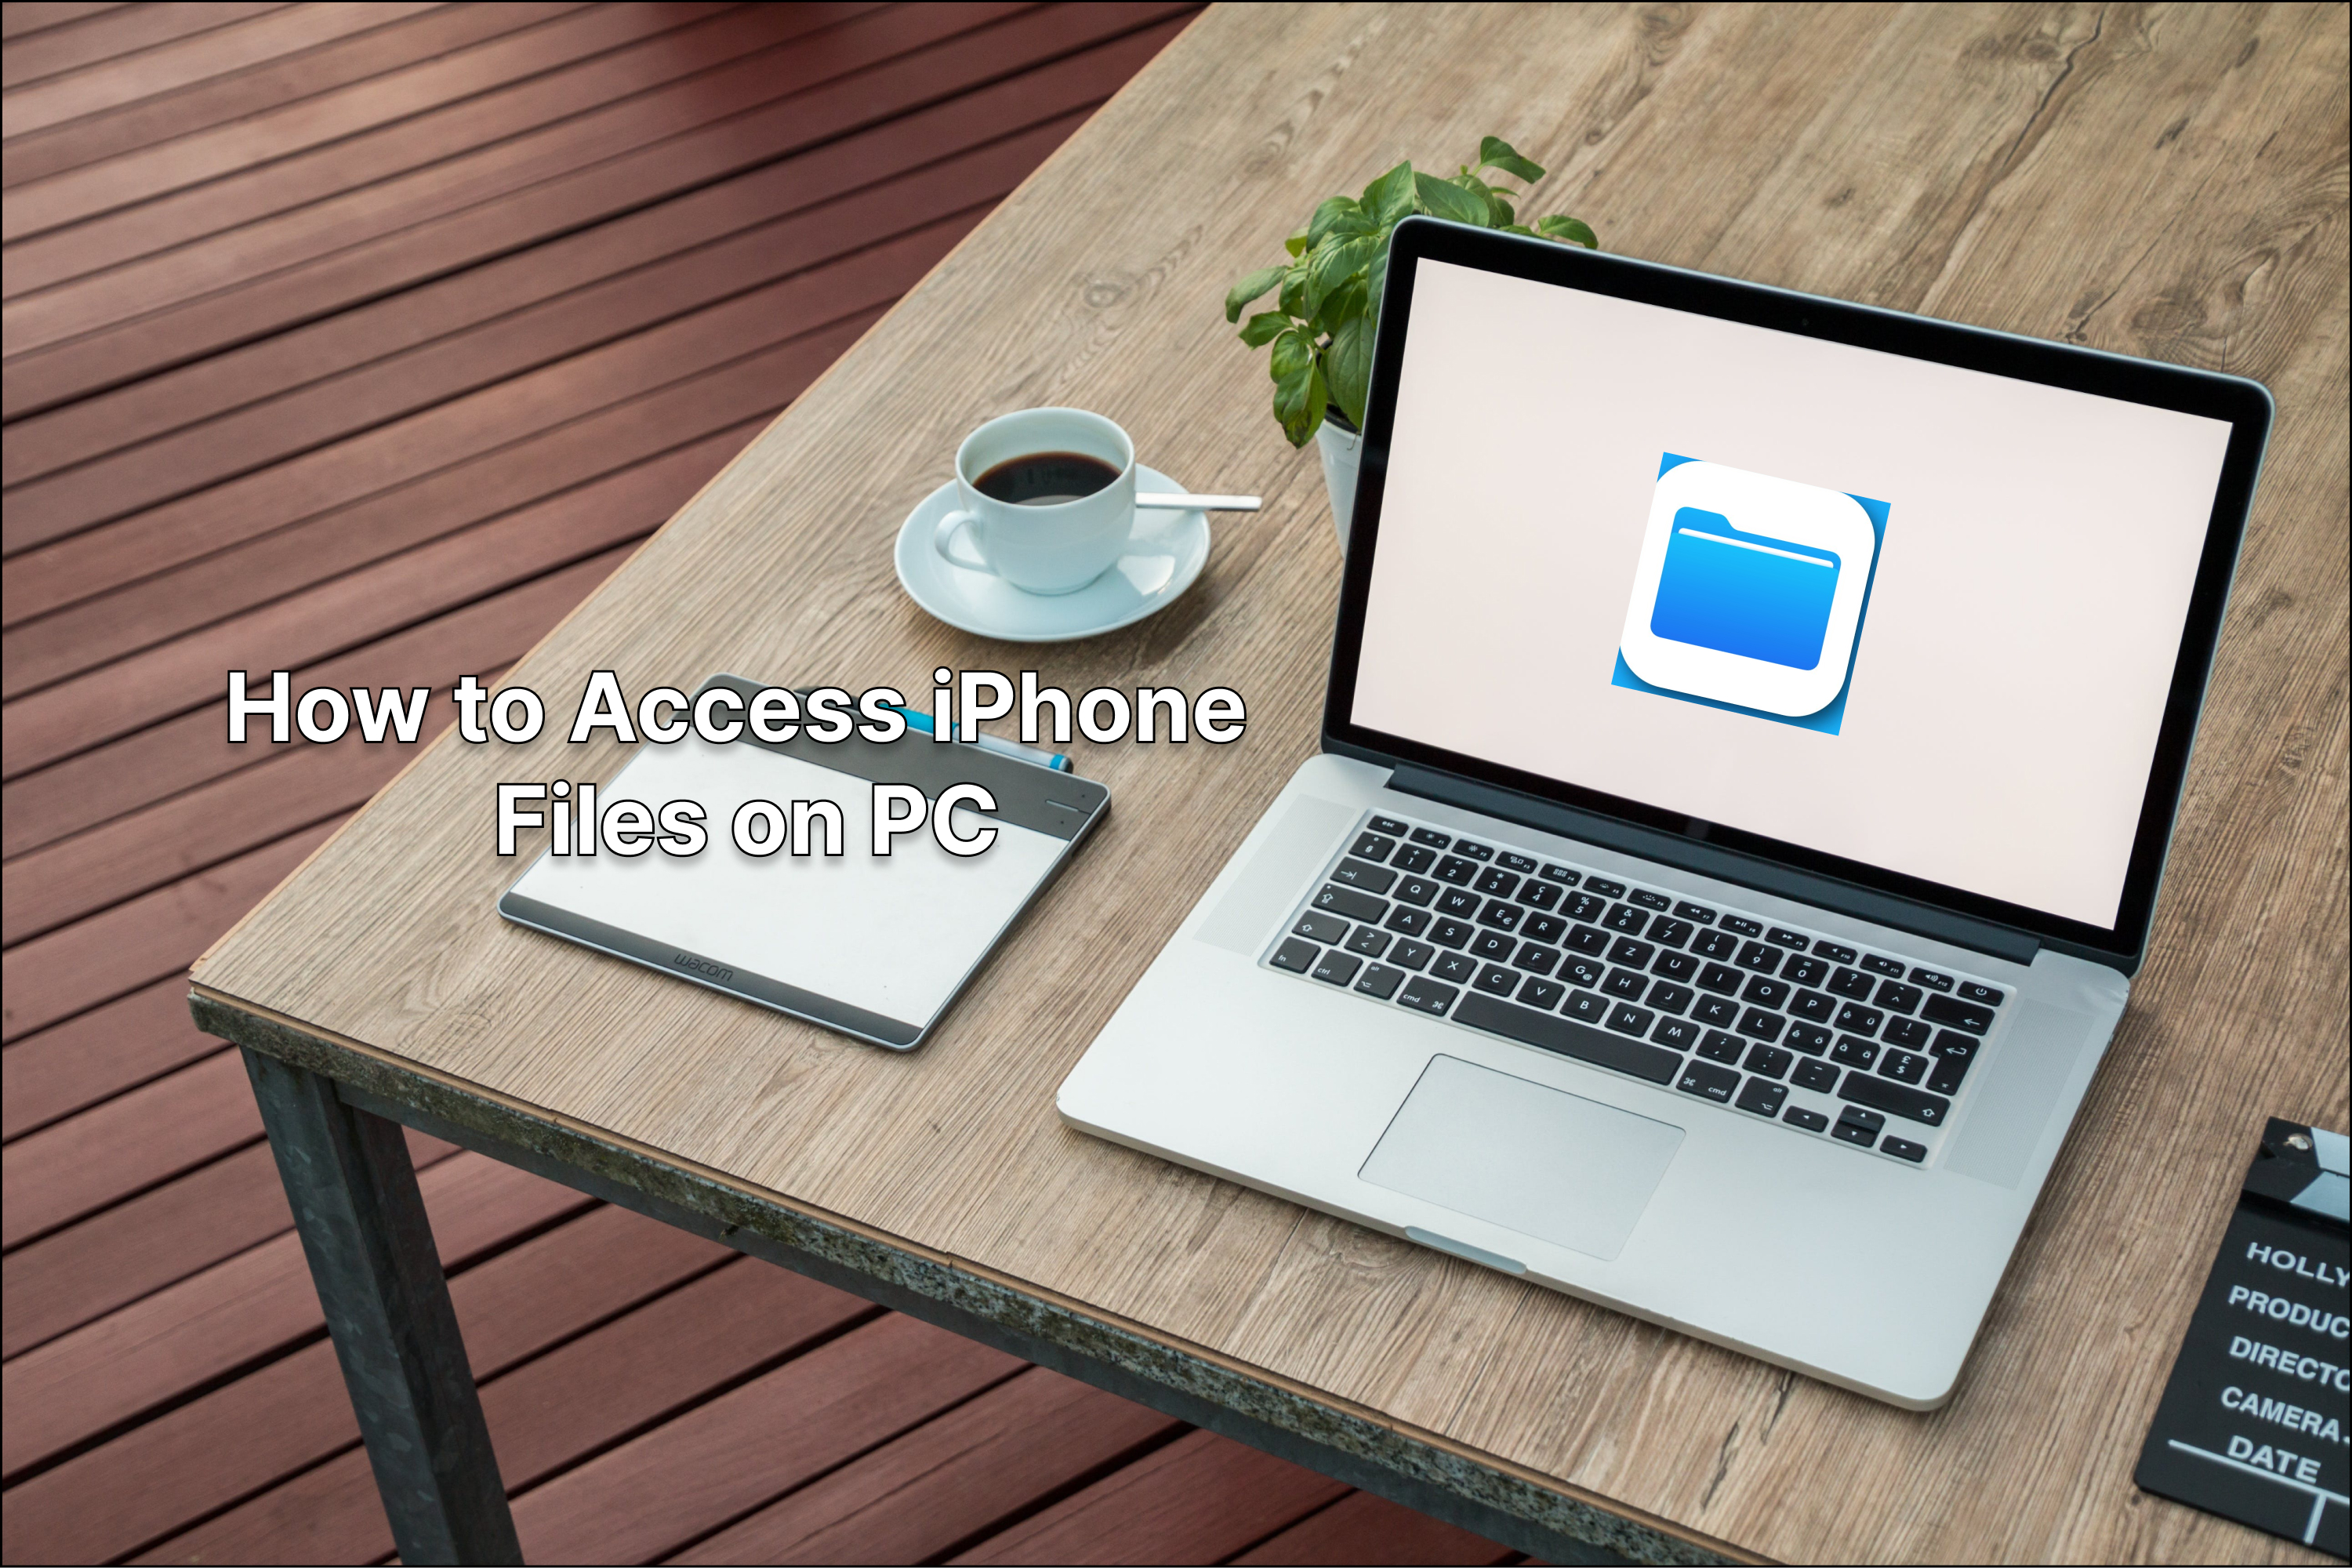 Простое руководство о том, как получить доступ к файлам iPhone на ПК